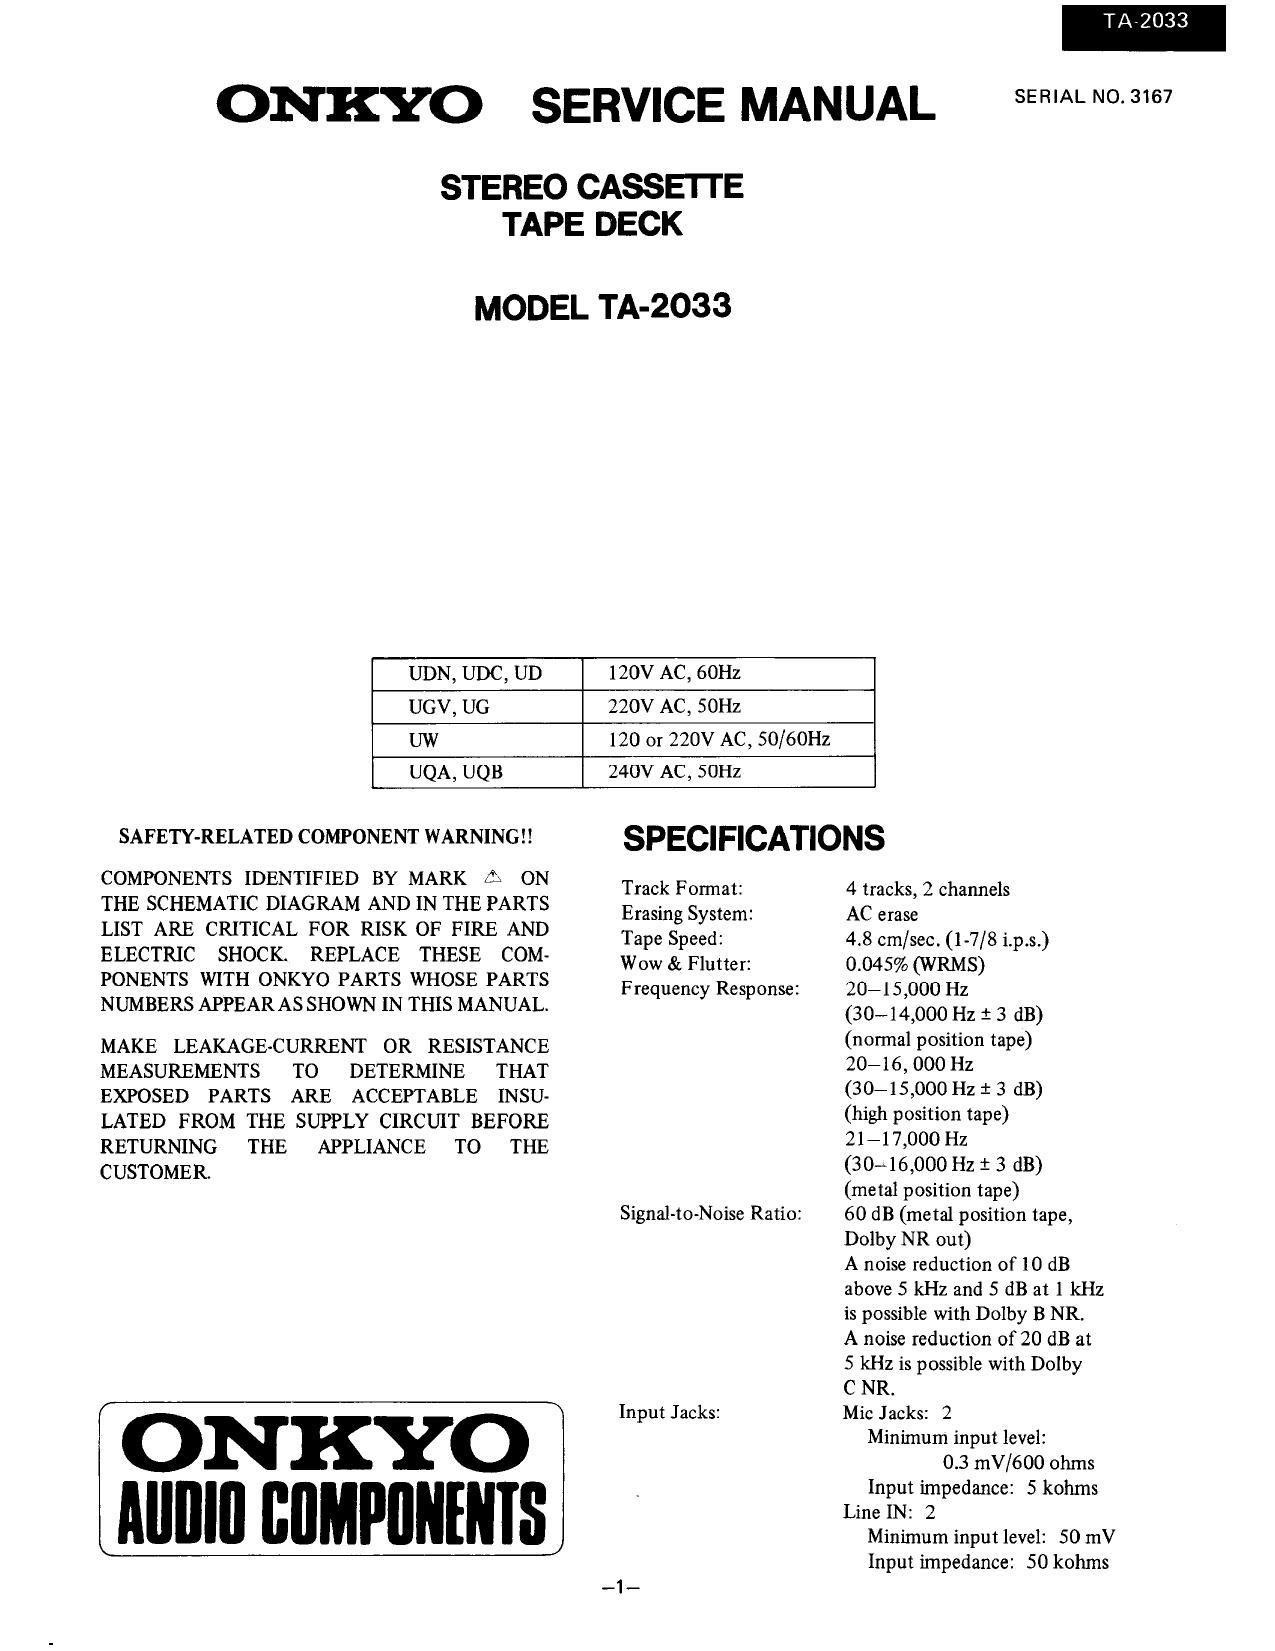 Onkyo TA 2033 Service Manual